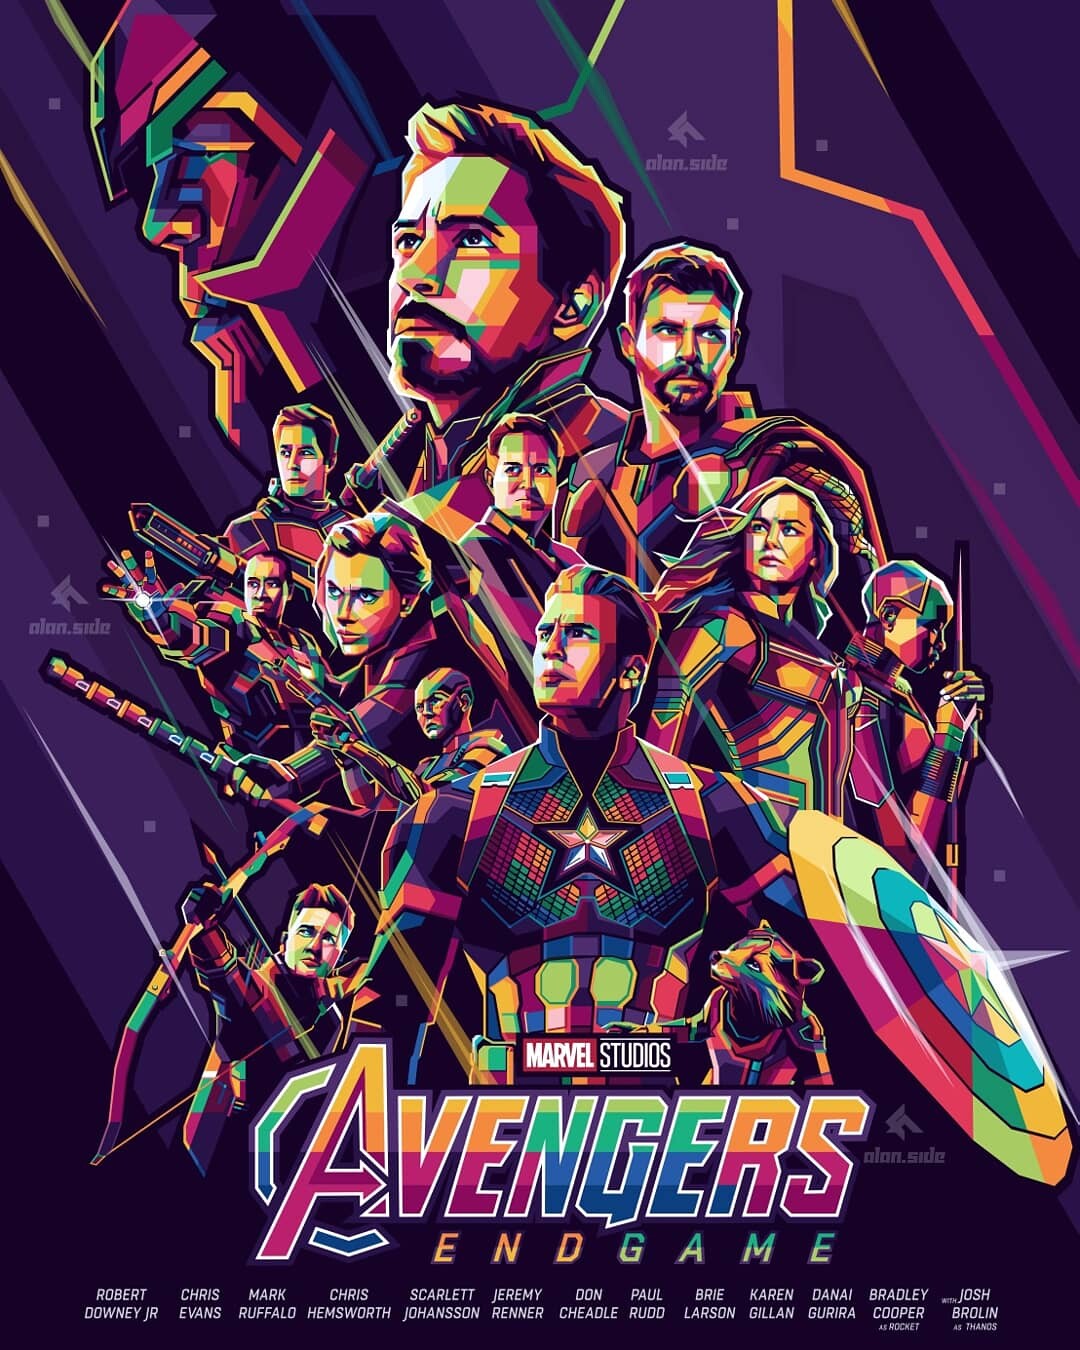 ArtStation - Avengers Endgame Poster in WPAP Style